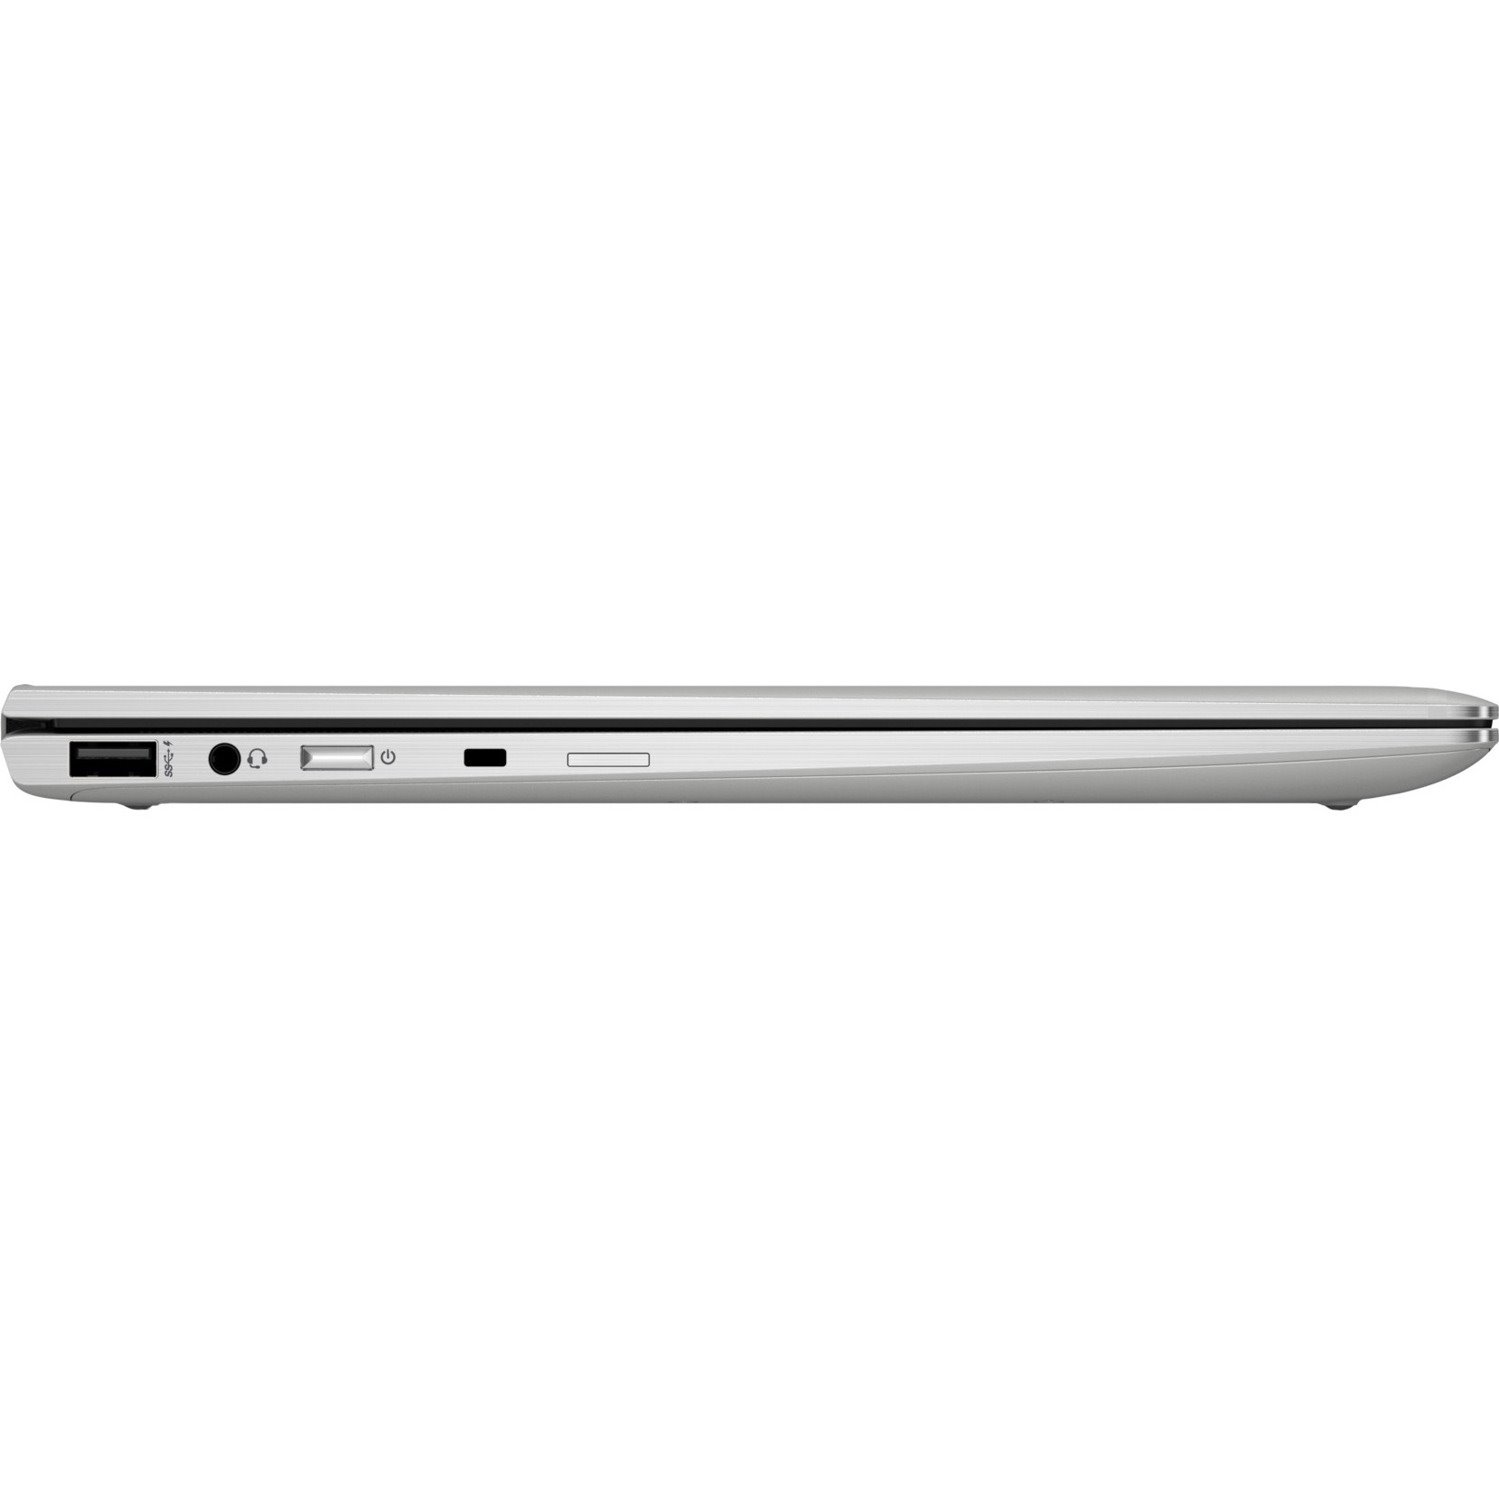 HP EliteBook x360 1040 G6 14" Convertible 2 in 1 Notebook - 3840 x 2160 - Intel Core i7 8th Gen i7-8665U Quad-core (4 Core) 1.90 GHz - 32 GB Total RAM - 1 TB SSD